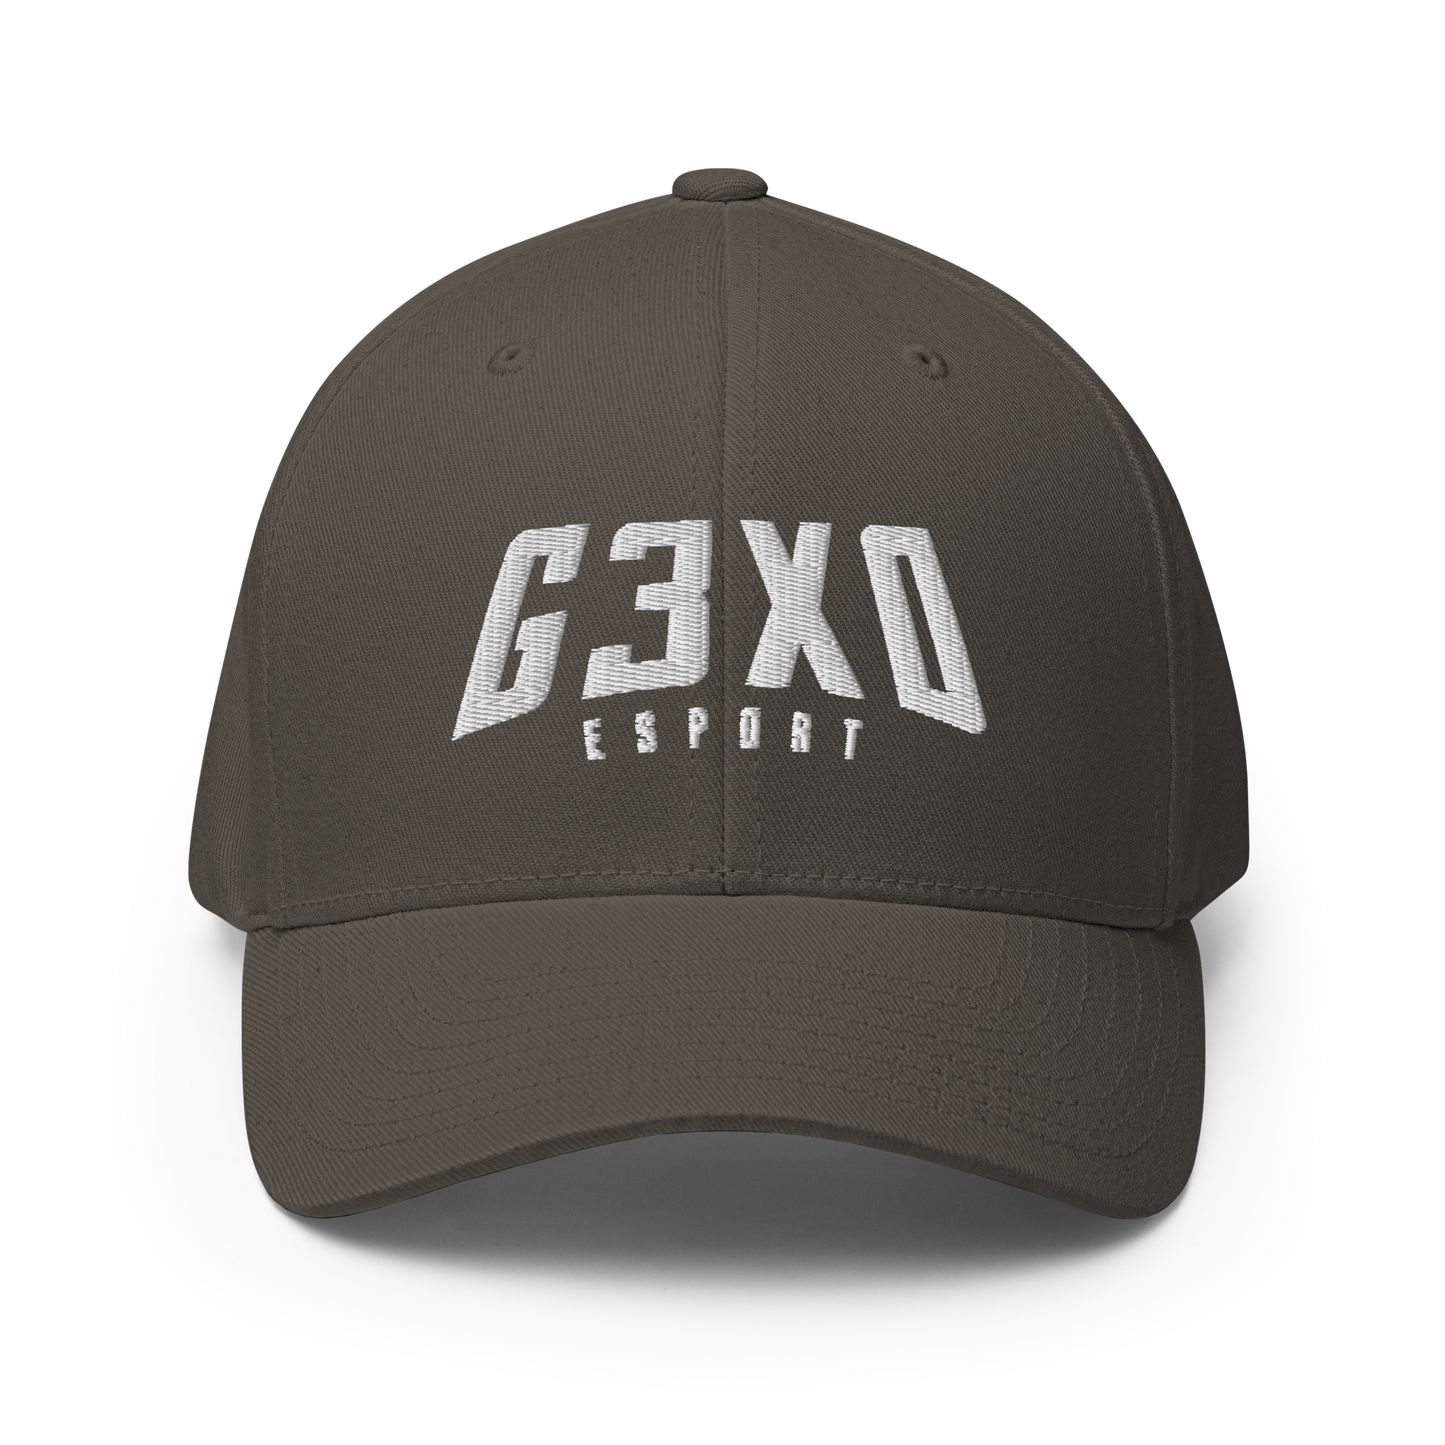 G3XO ESPORT - Flexfit Cap